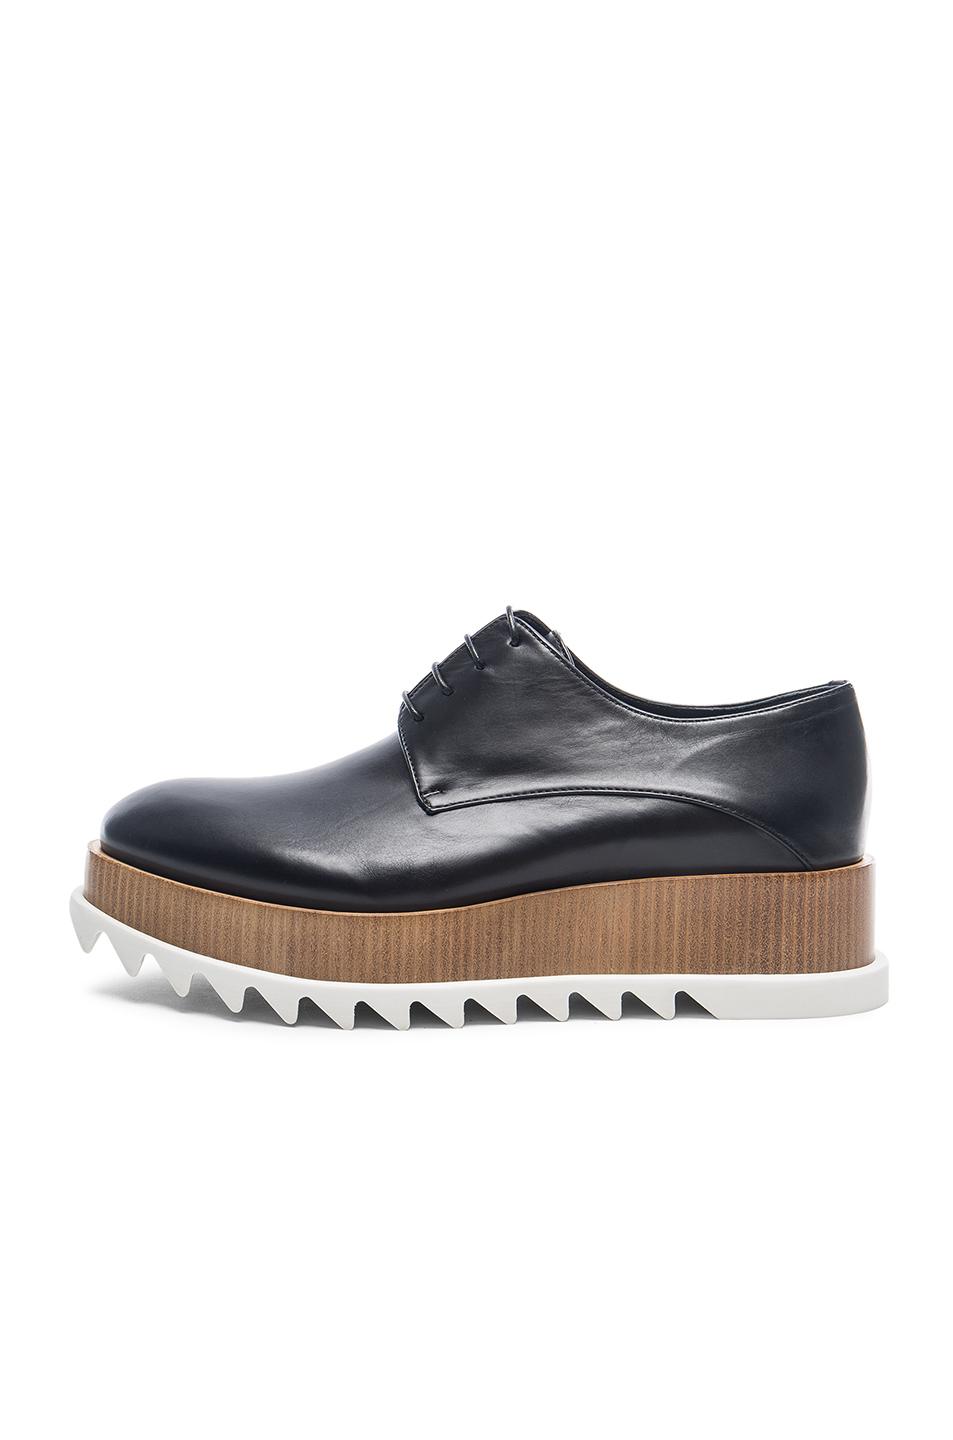 Jil Sander 50mm Leather Platform Lace-up Shoes, Black | ModeSens